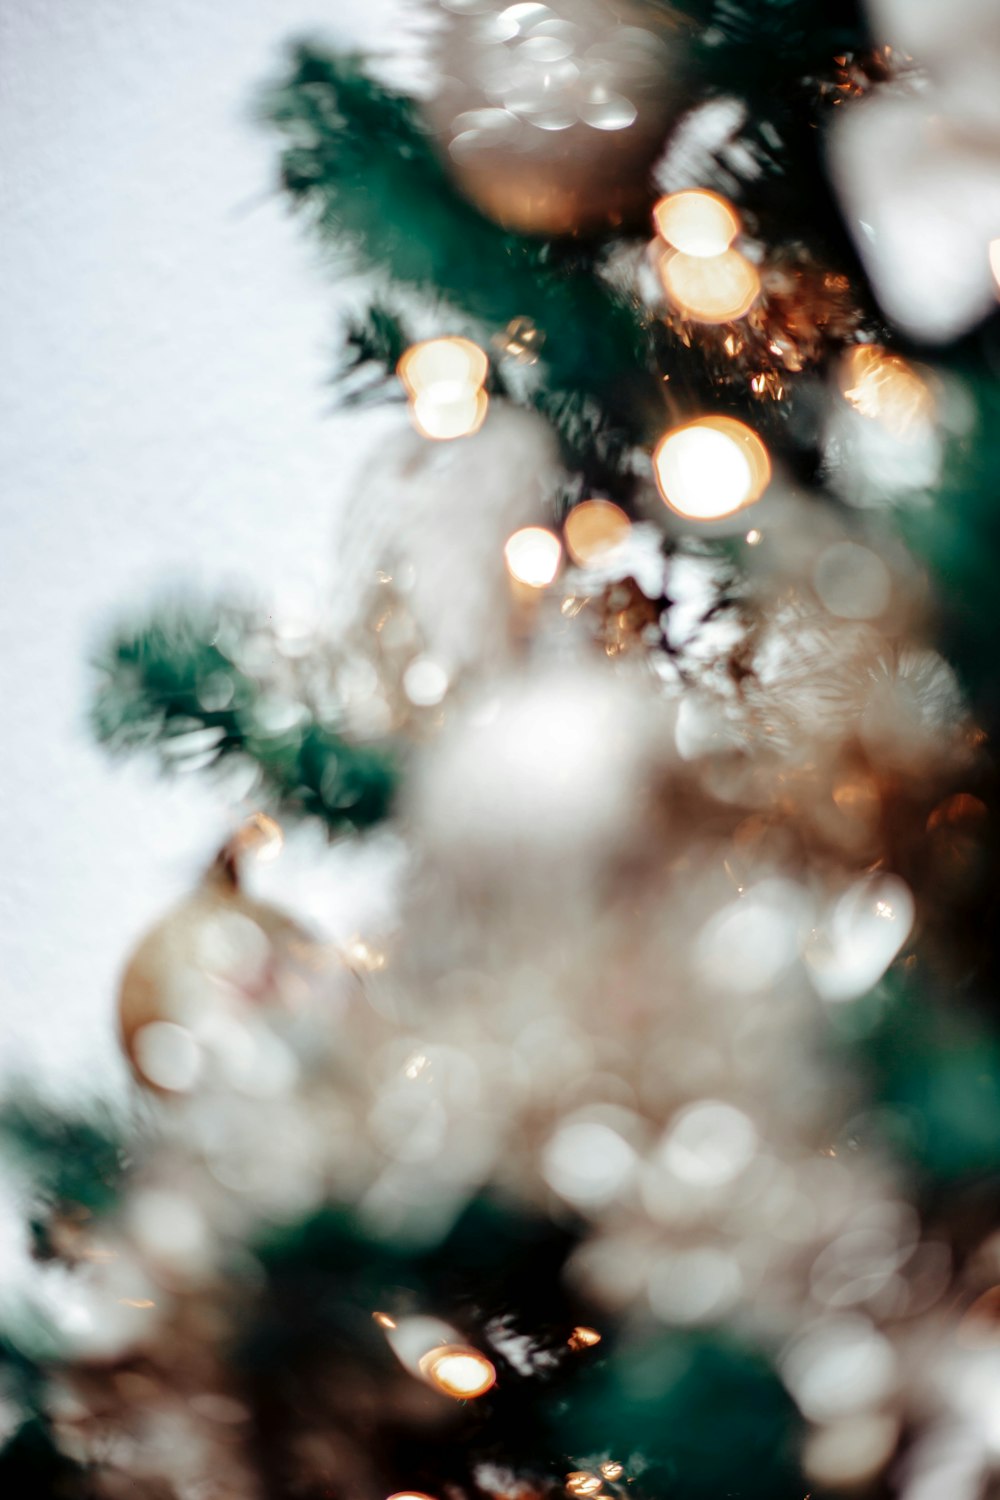 Ánh sáng của những dây đèn cây thông Noel sẽ làm cho bạn không thể rời mắt khỏi hình ảnh này. Nếu bạn muốn tạo ra không khí lễ hội và bầu không khí tuyệt vời cho gia đình của mình, hãy chiêm ngưỡng hình ảnh đầy sáng tạo và lung linh này ngay bây giờ!